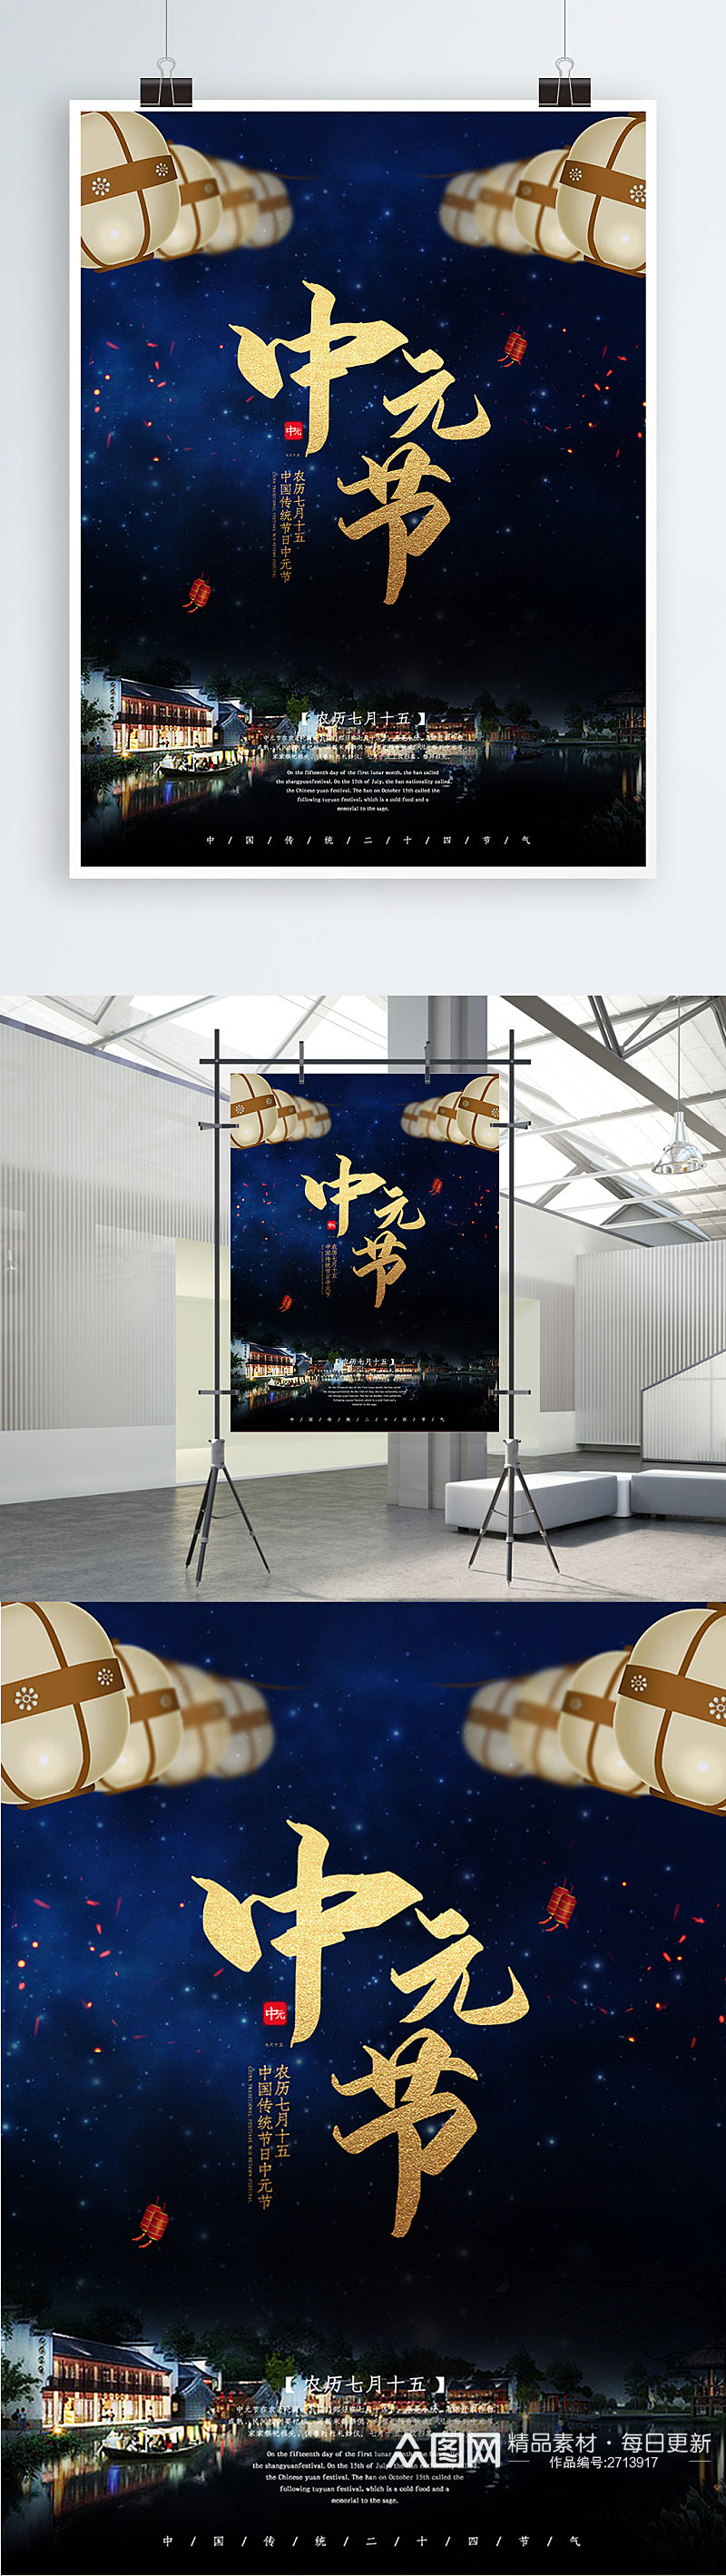 中元节节日活动促销海报素材